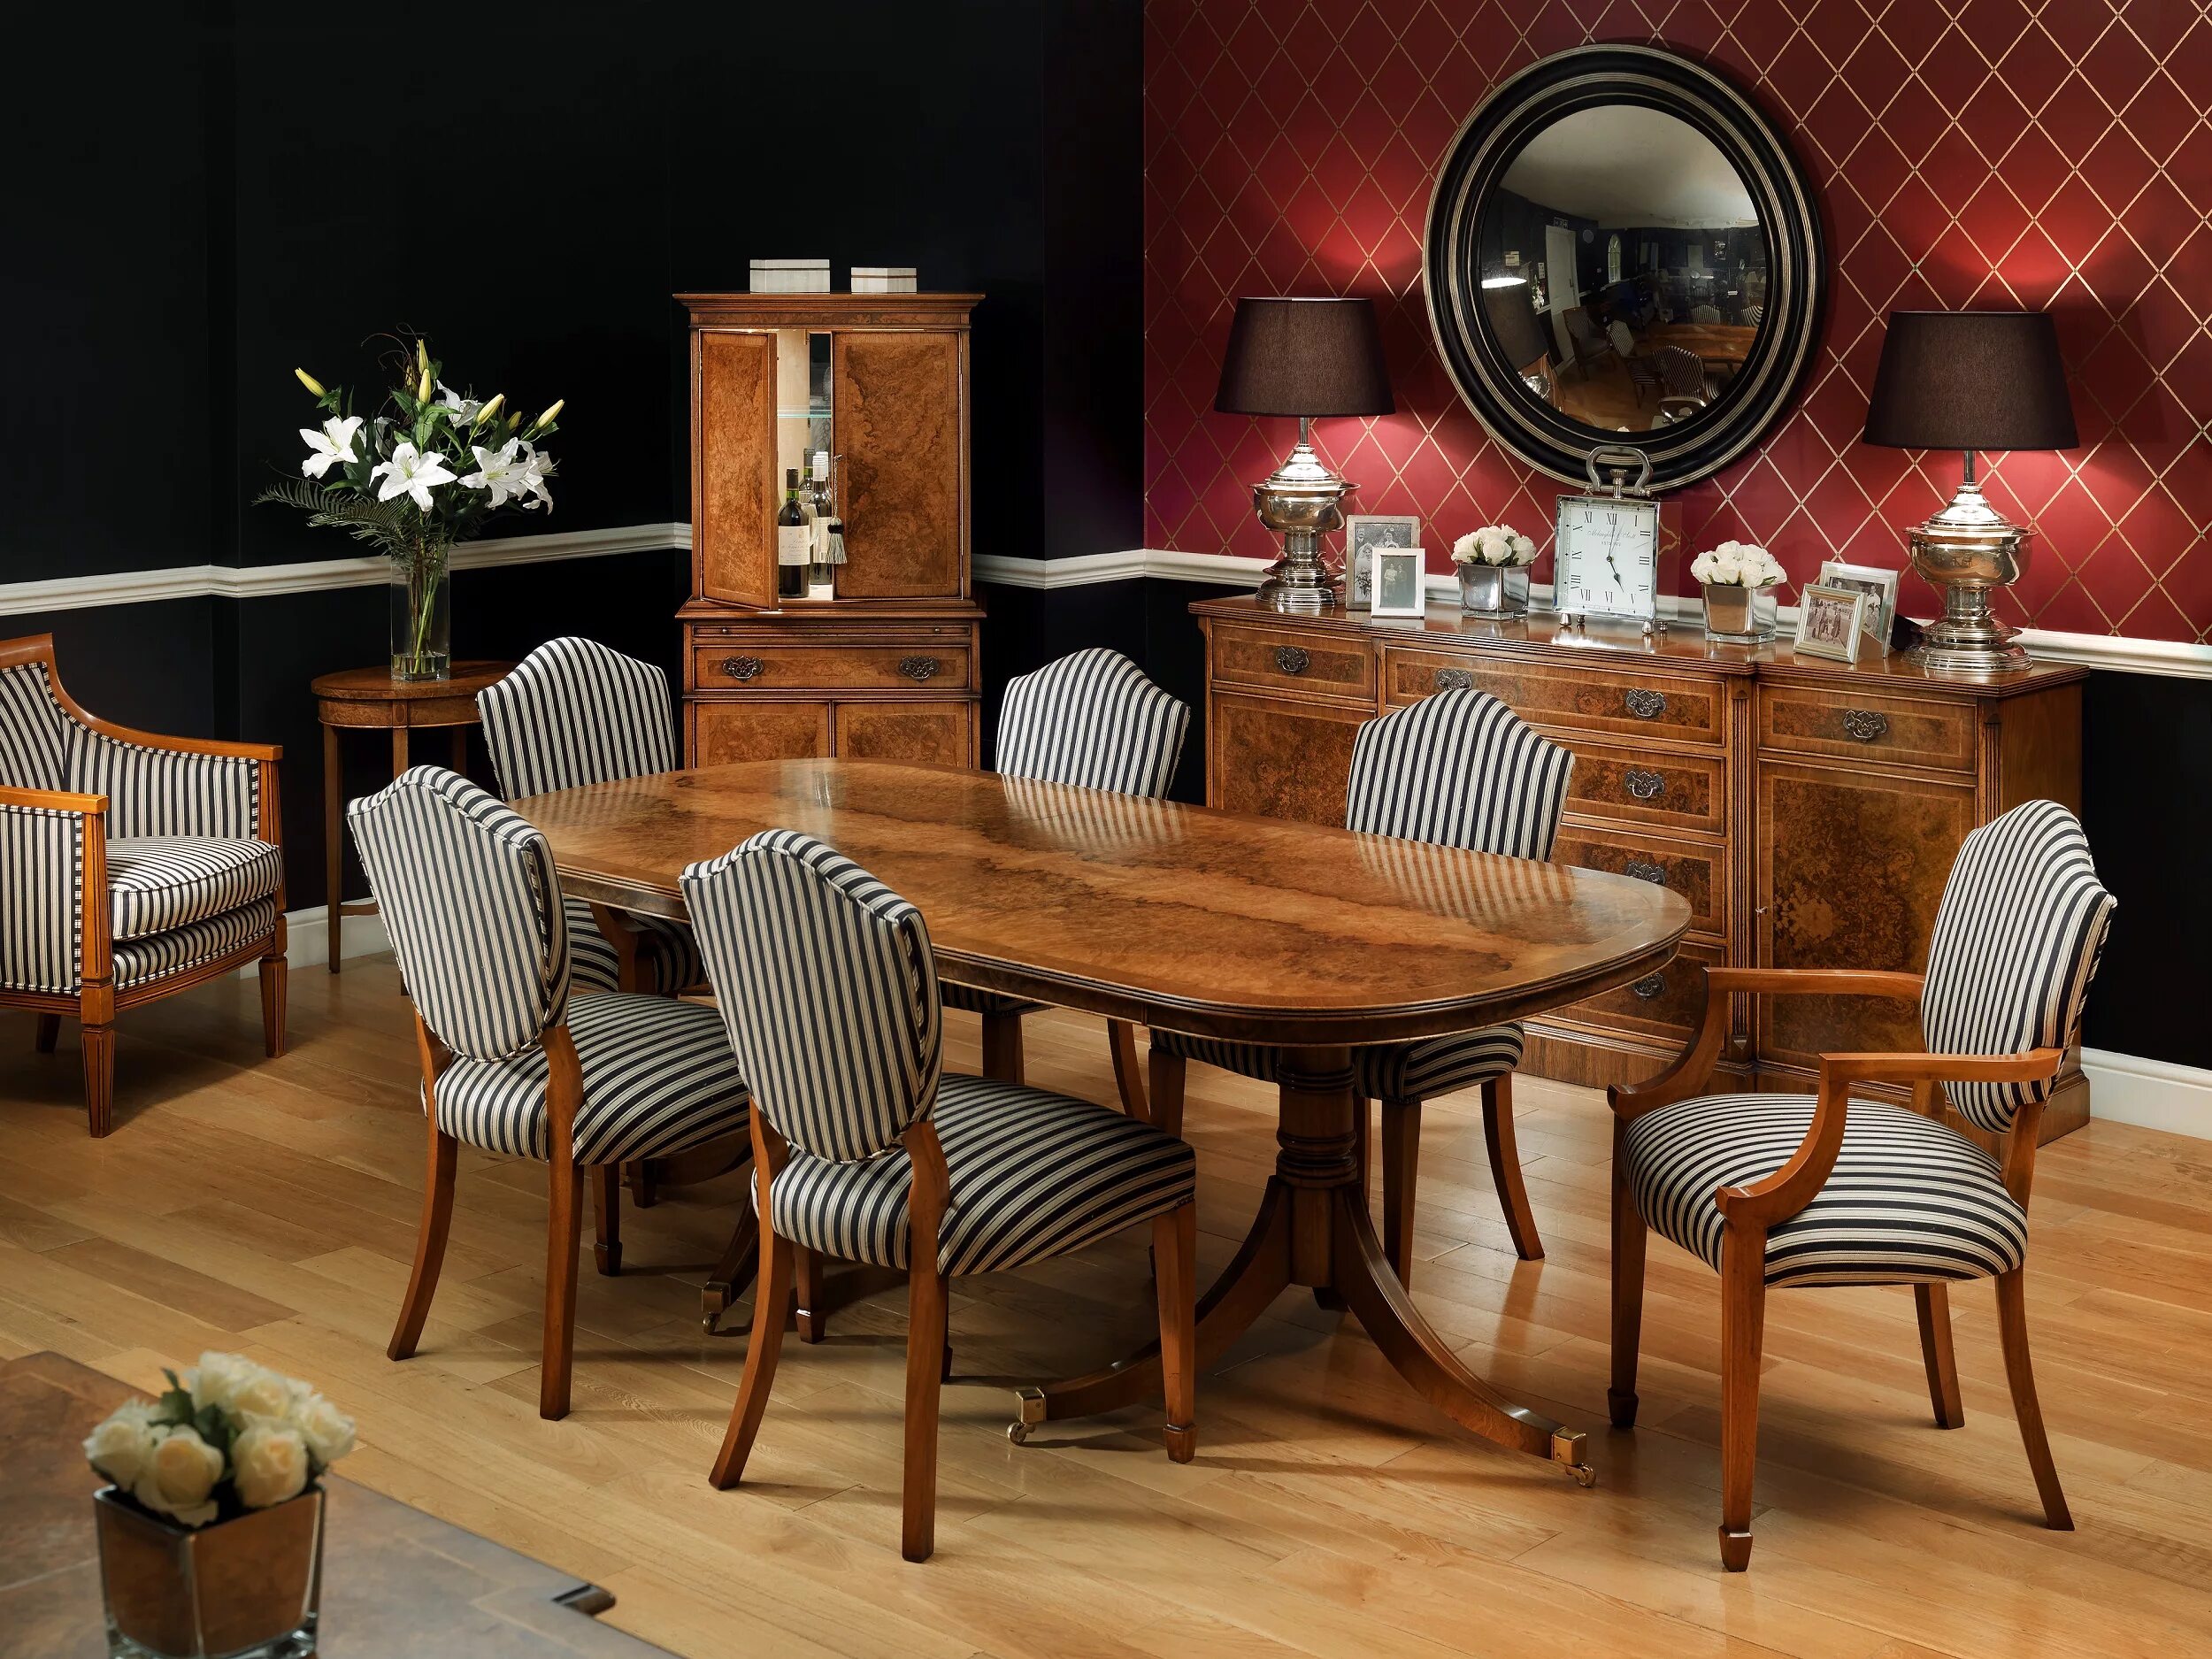 Мебель Walnut Dining Table. Английский стиль столы и стулья. Обеденный стол в английском стиле. Обеденный стол в григорианском стиле. Кипи стол